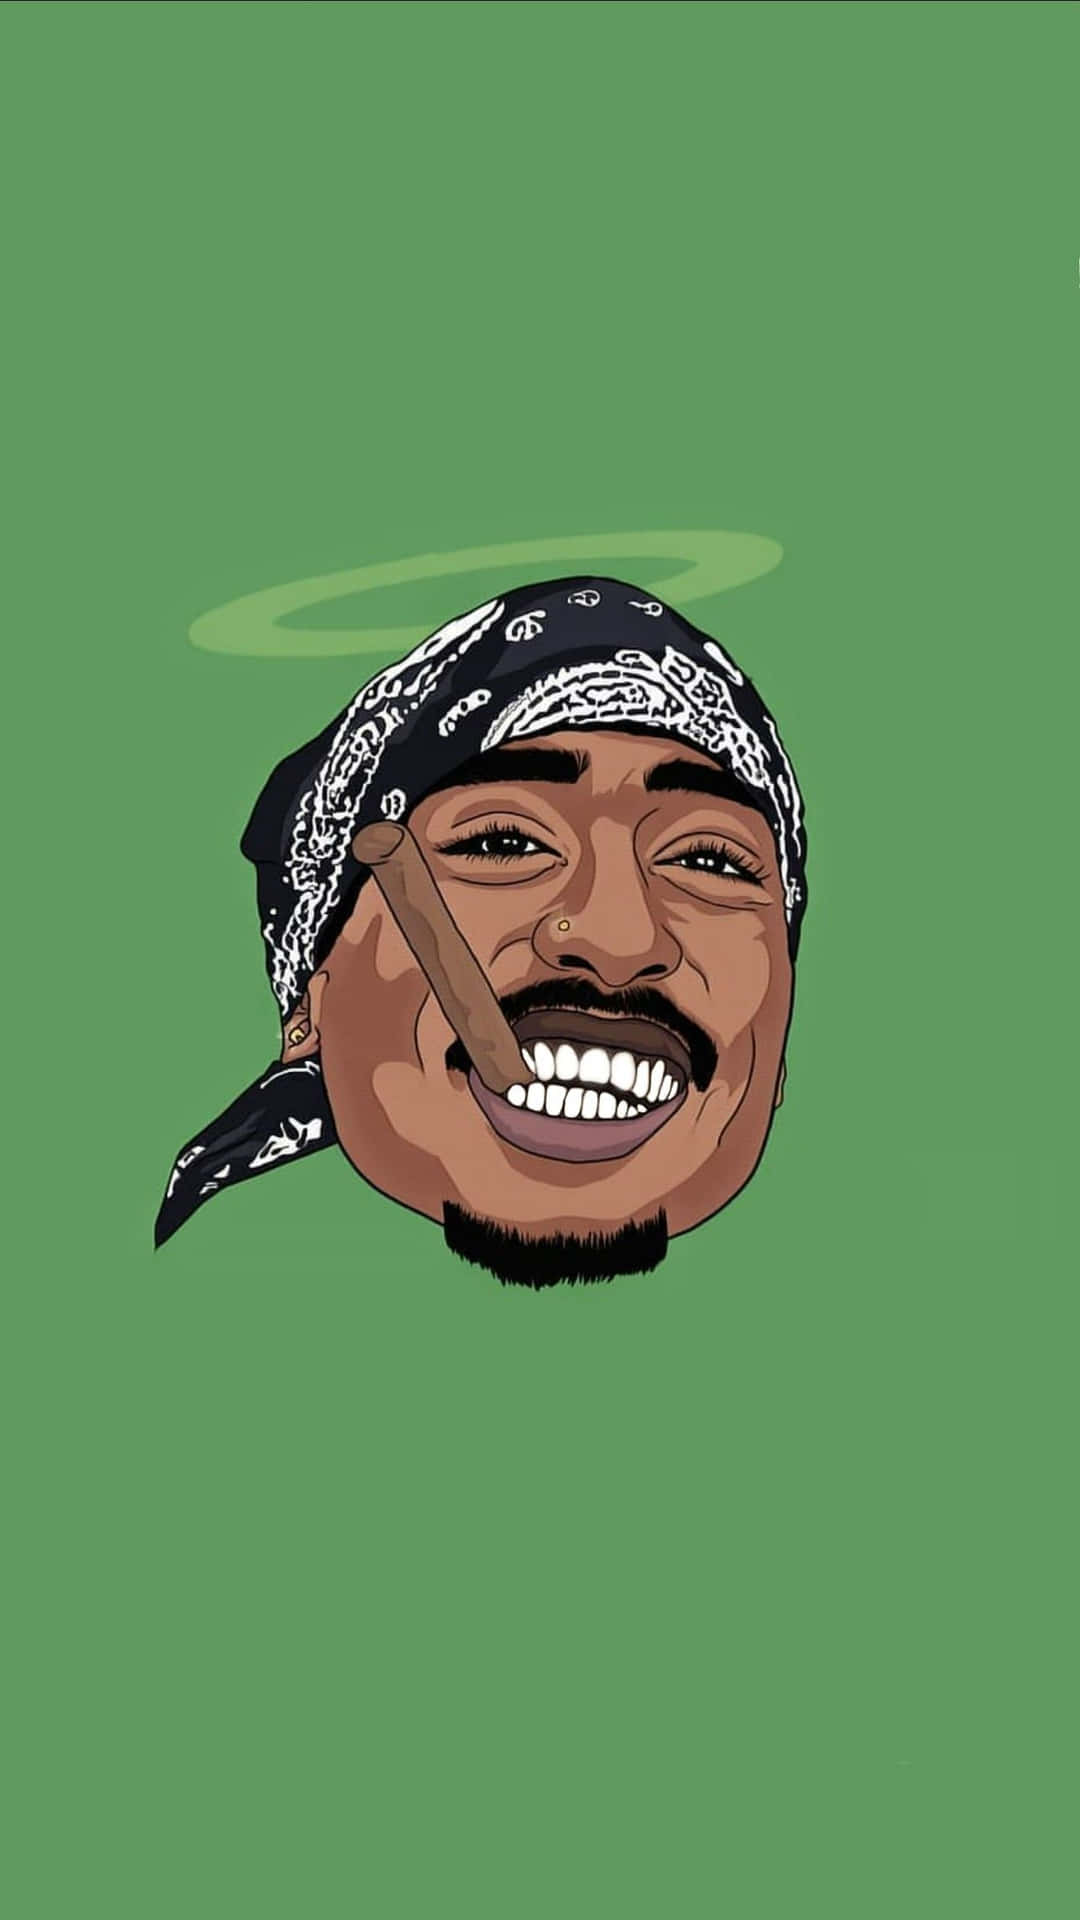 Entecknad Illustration Av Den Ikoniska Rapparen Tupac Shakur. Wallpaper